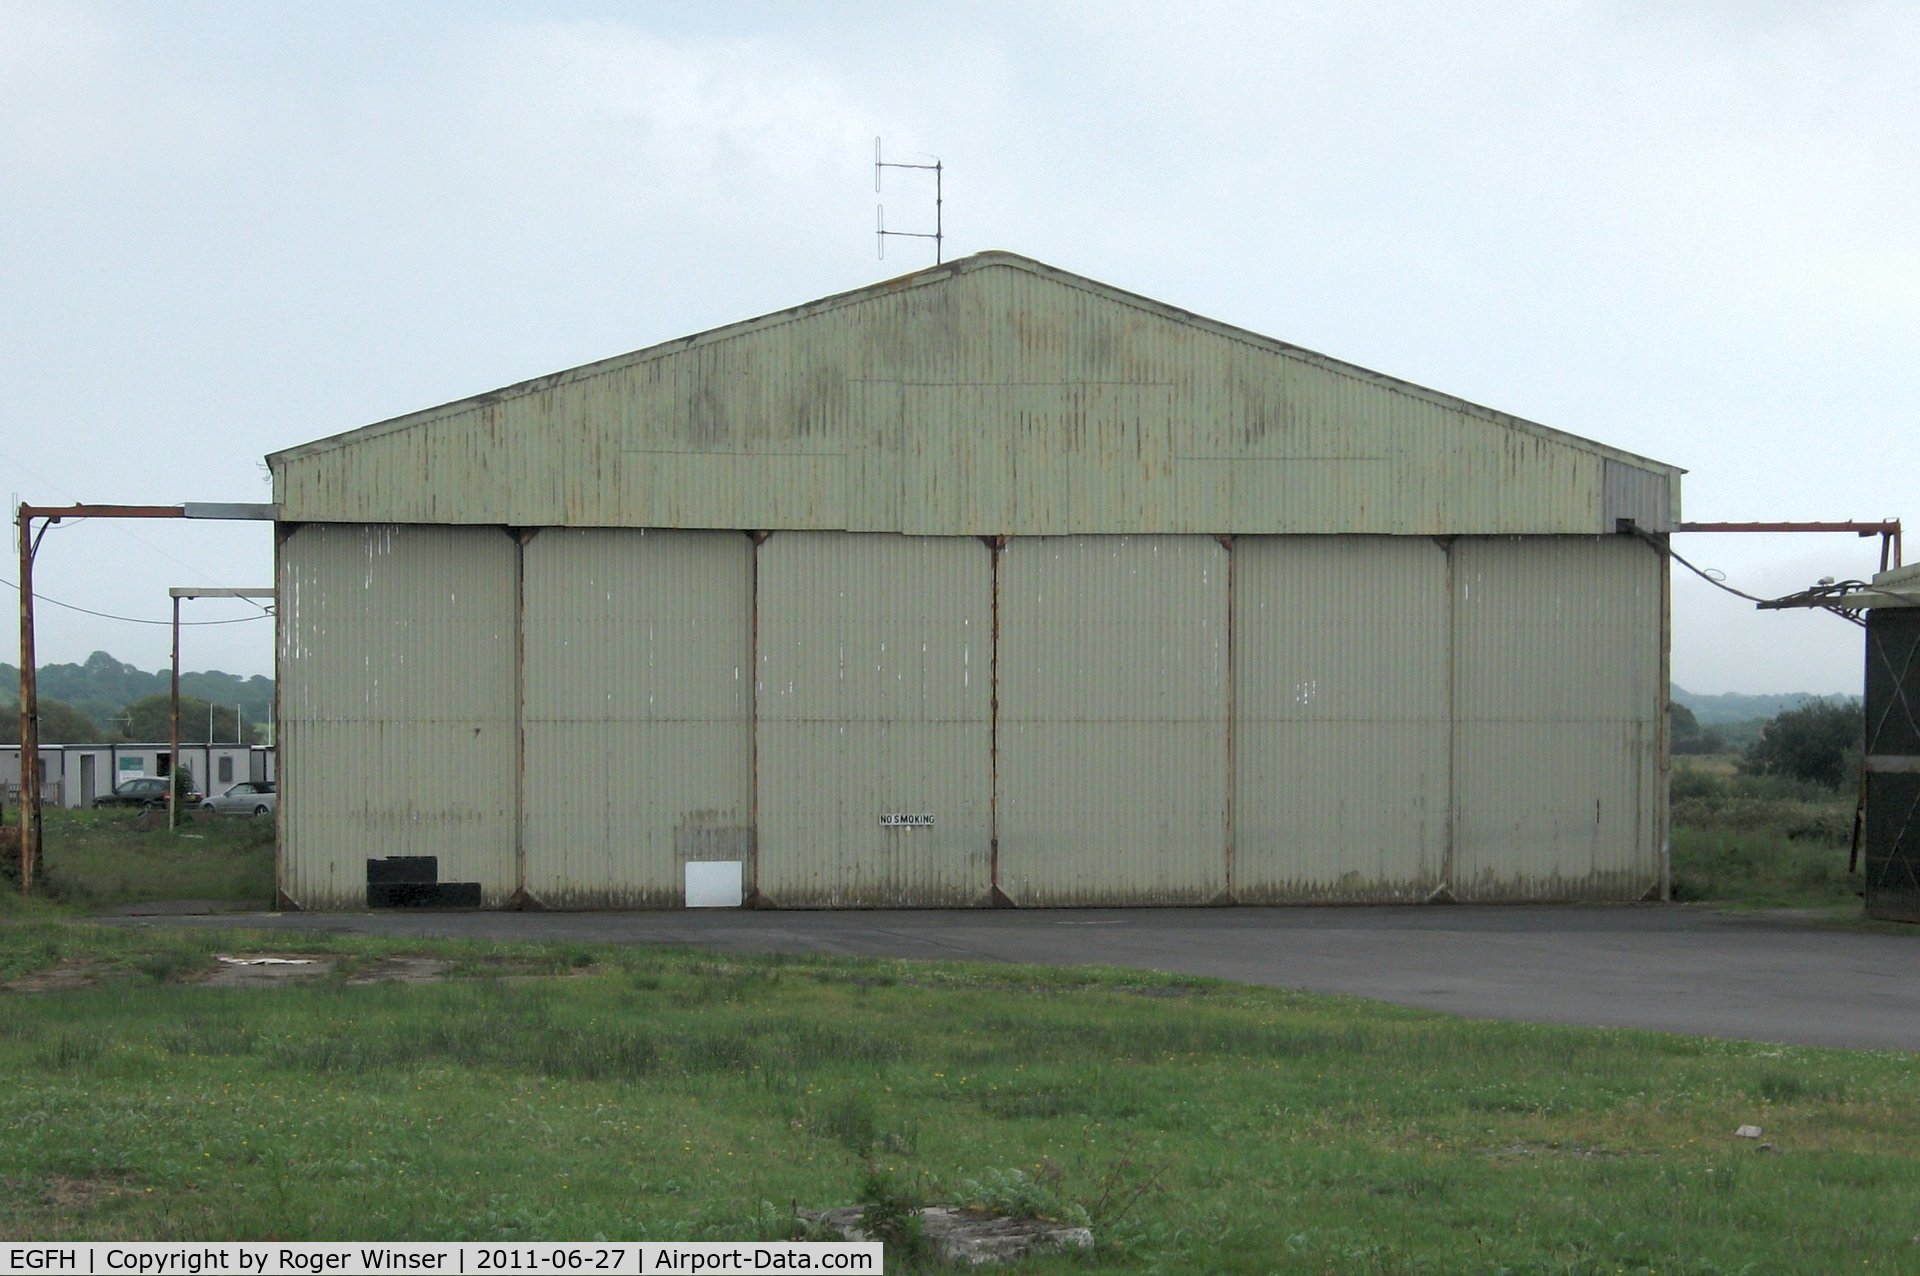 Swansea Airport, Swansea, Wales United Kingdom (EGFH) - B1 type hangar (Hangar 1) erected in the 1950's.